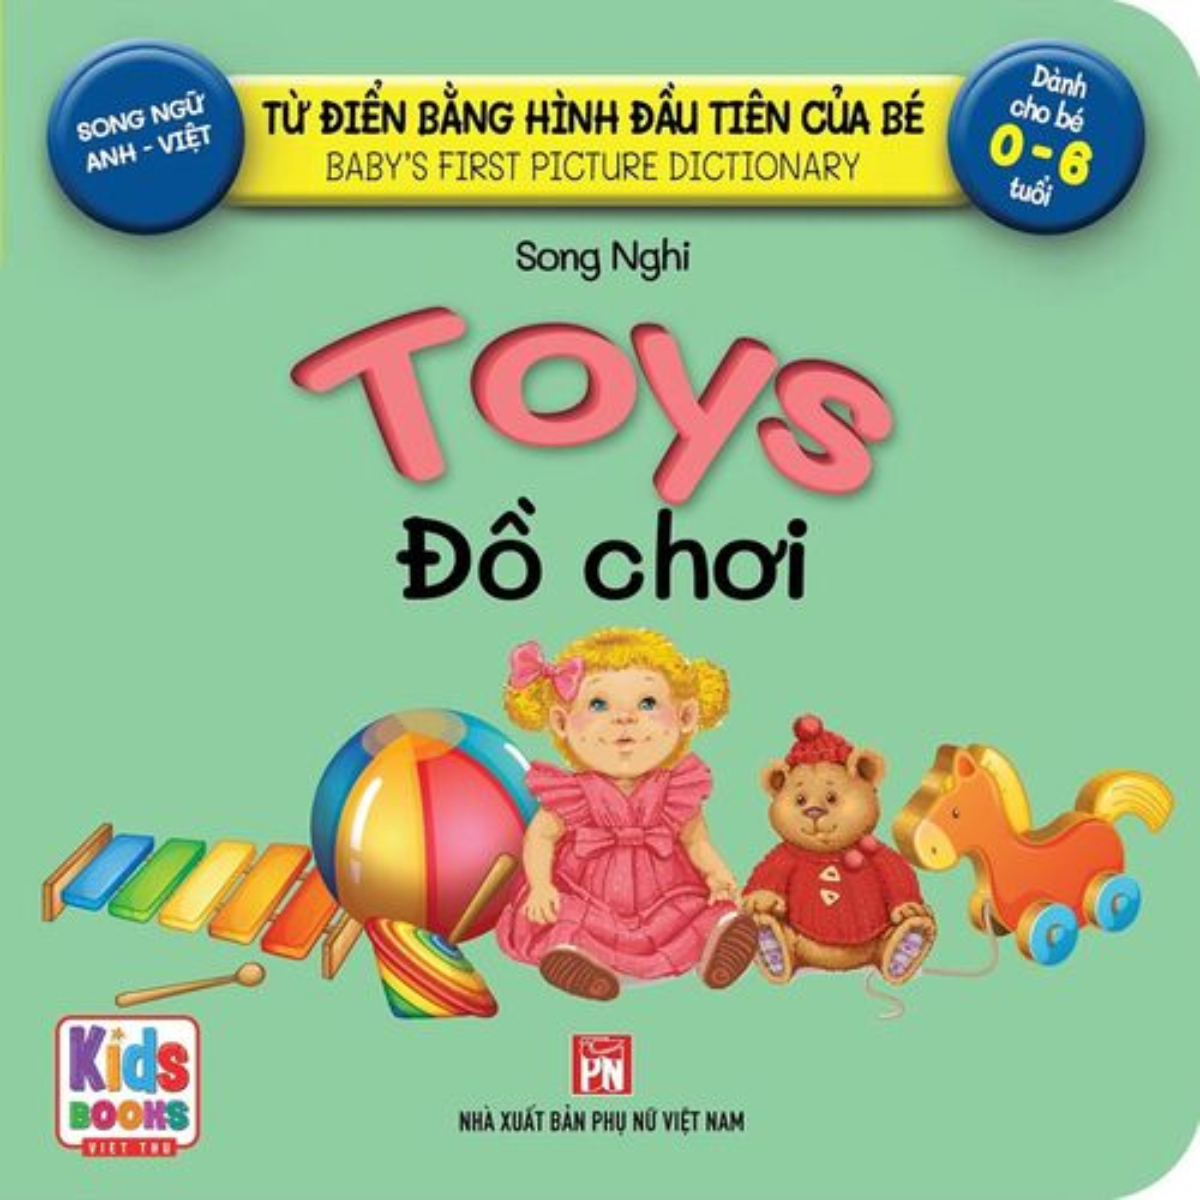 Từ Điển Bằng Hình Đầu Tiên Của Bé - Toys - Đồ Chơi (Song Ngữ Anh-Việt)